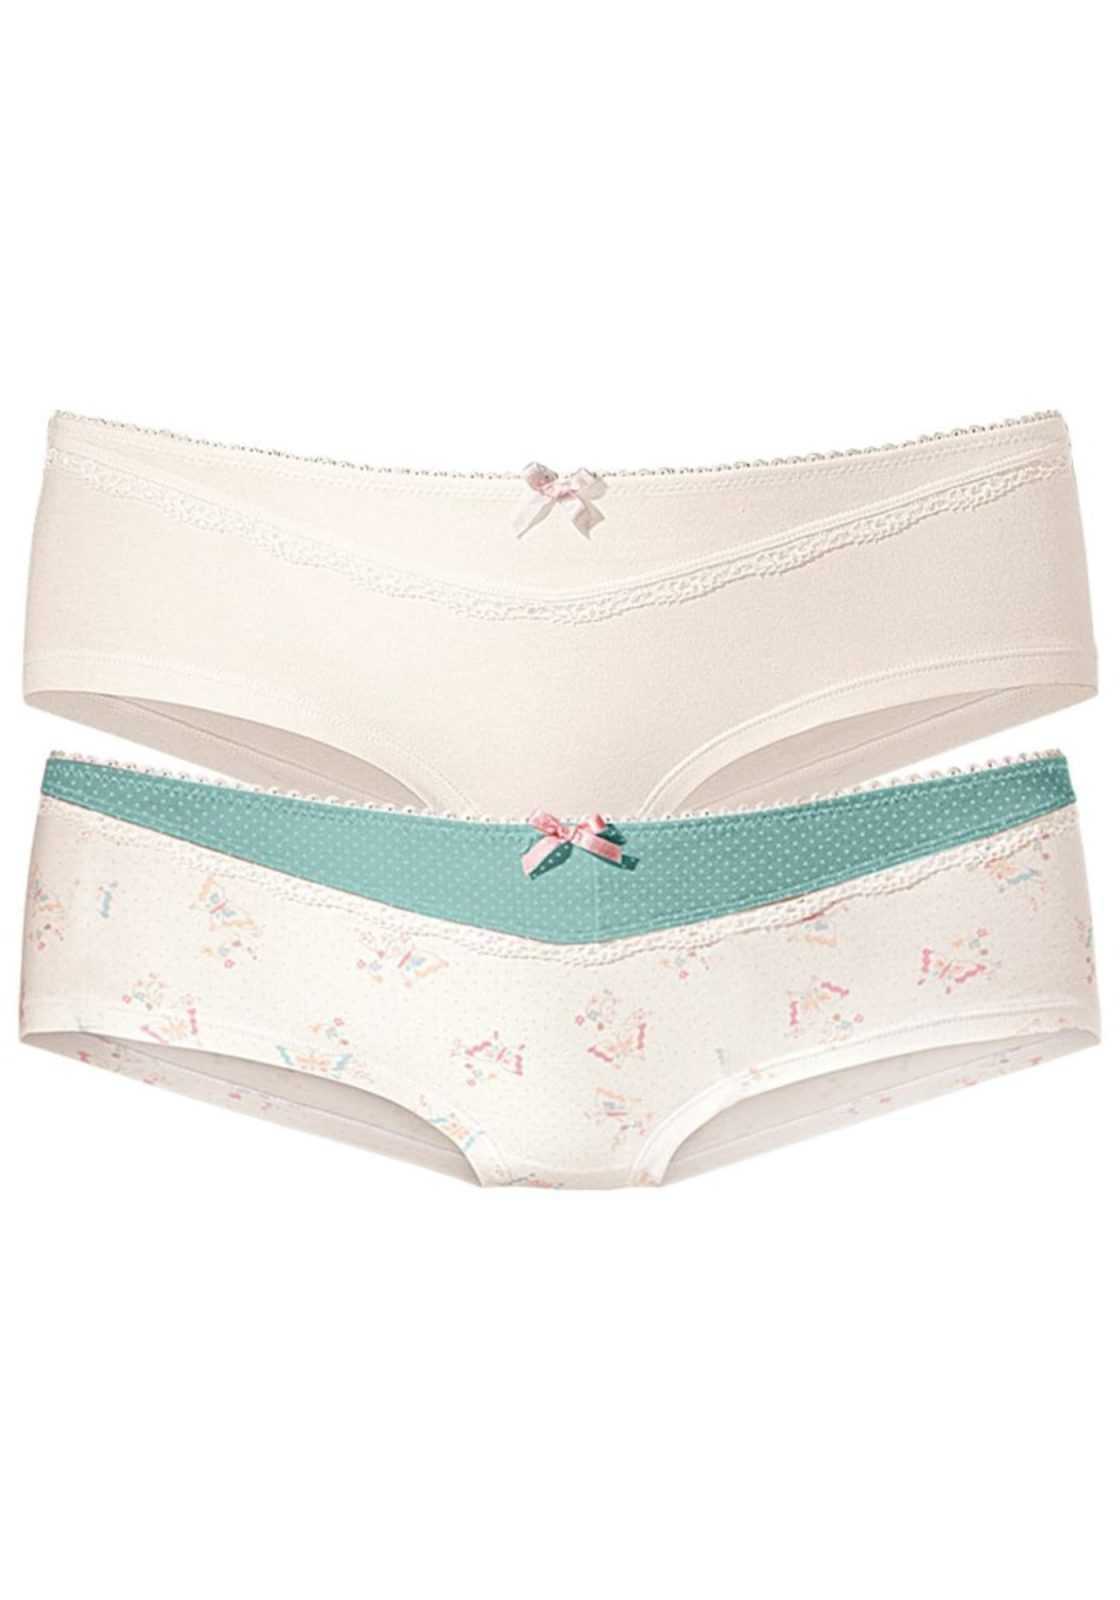 PETITE FLEUR Spodnje hlače  kremna / meta / roza / volneno bela